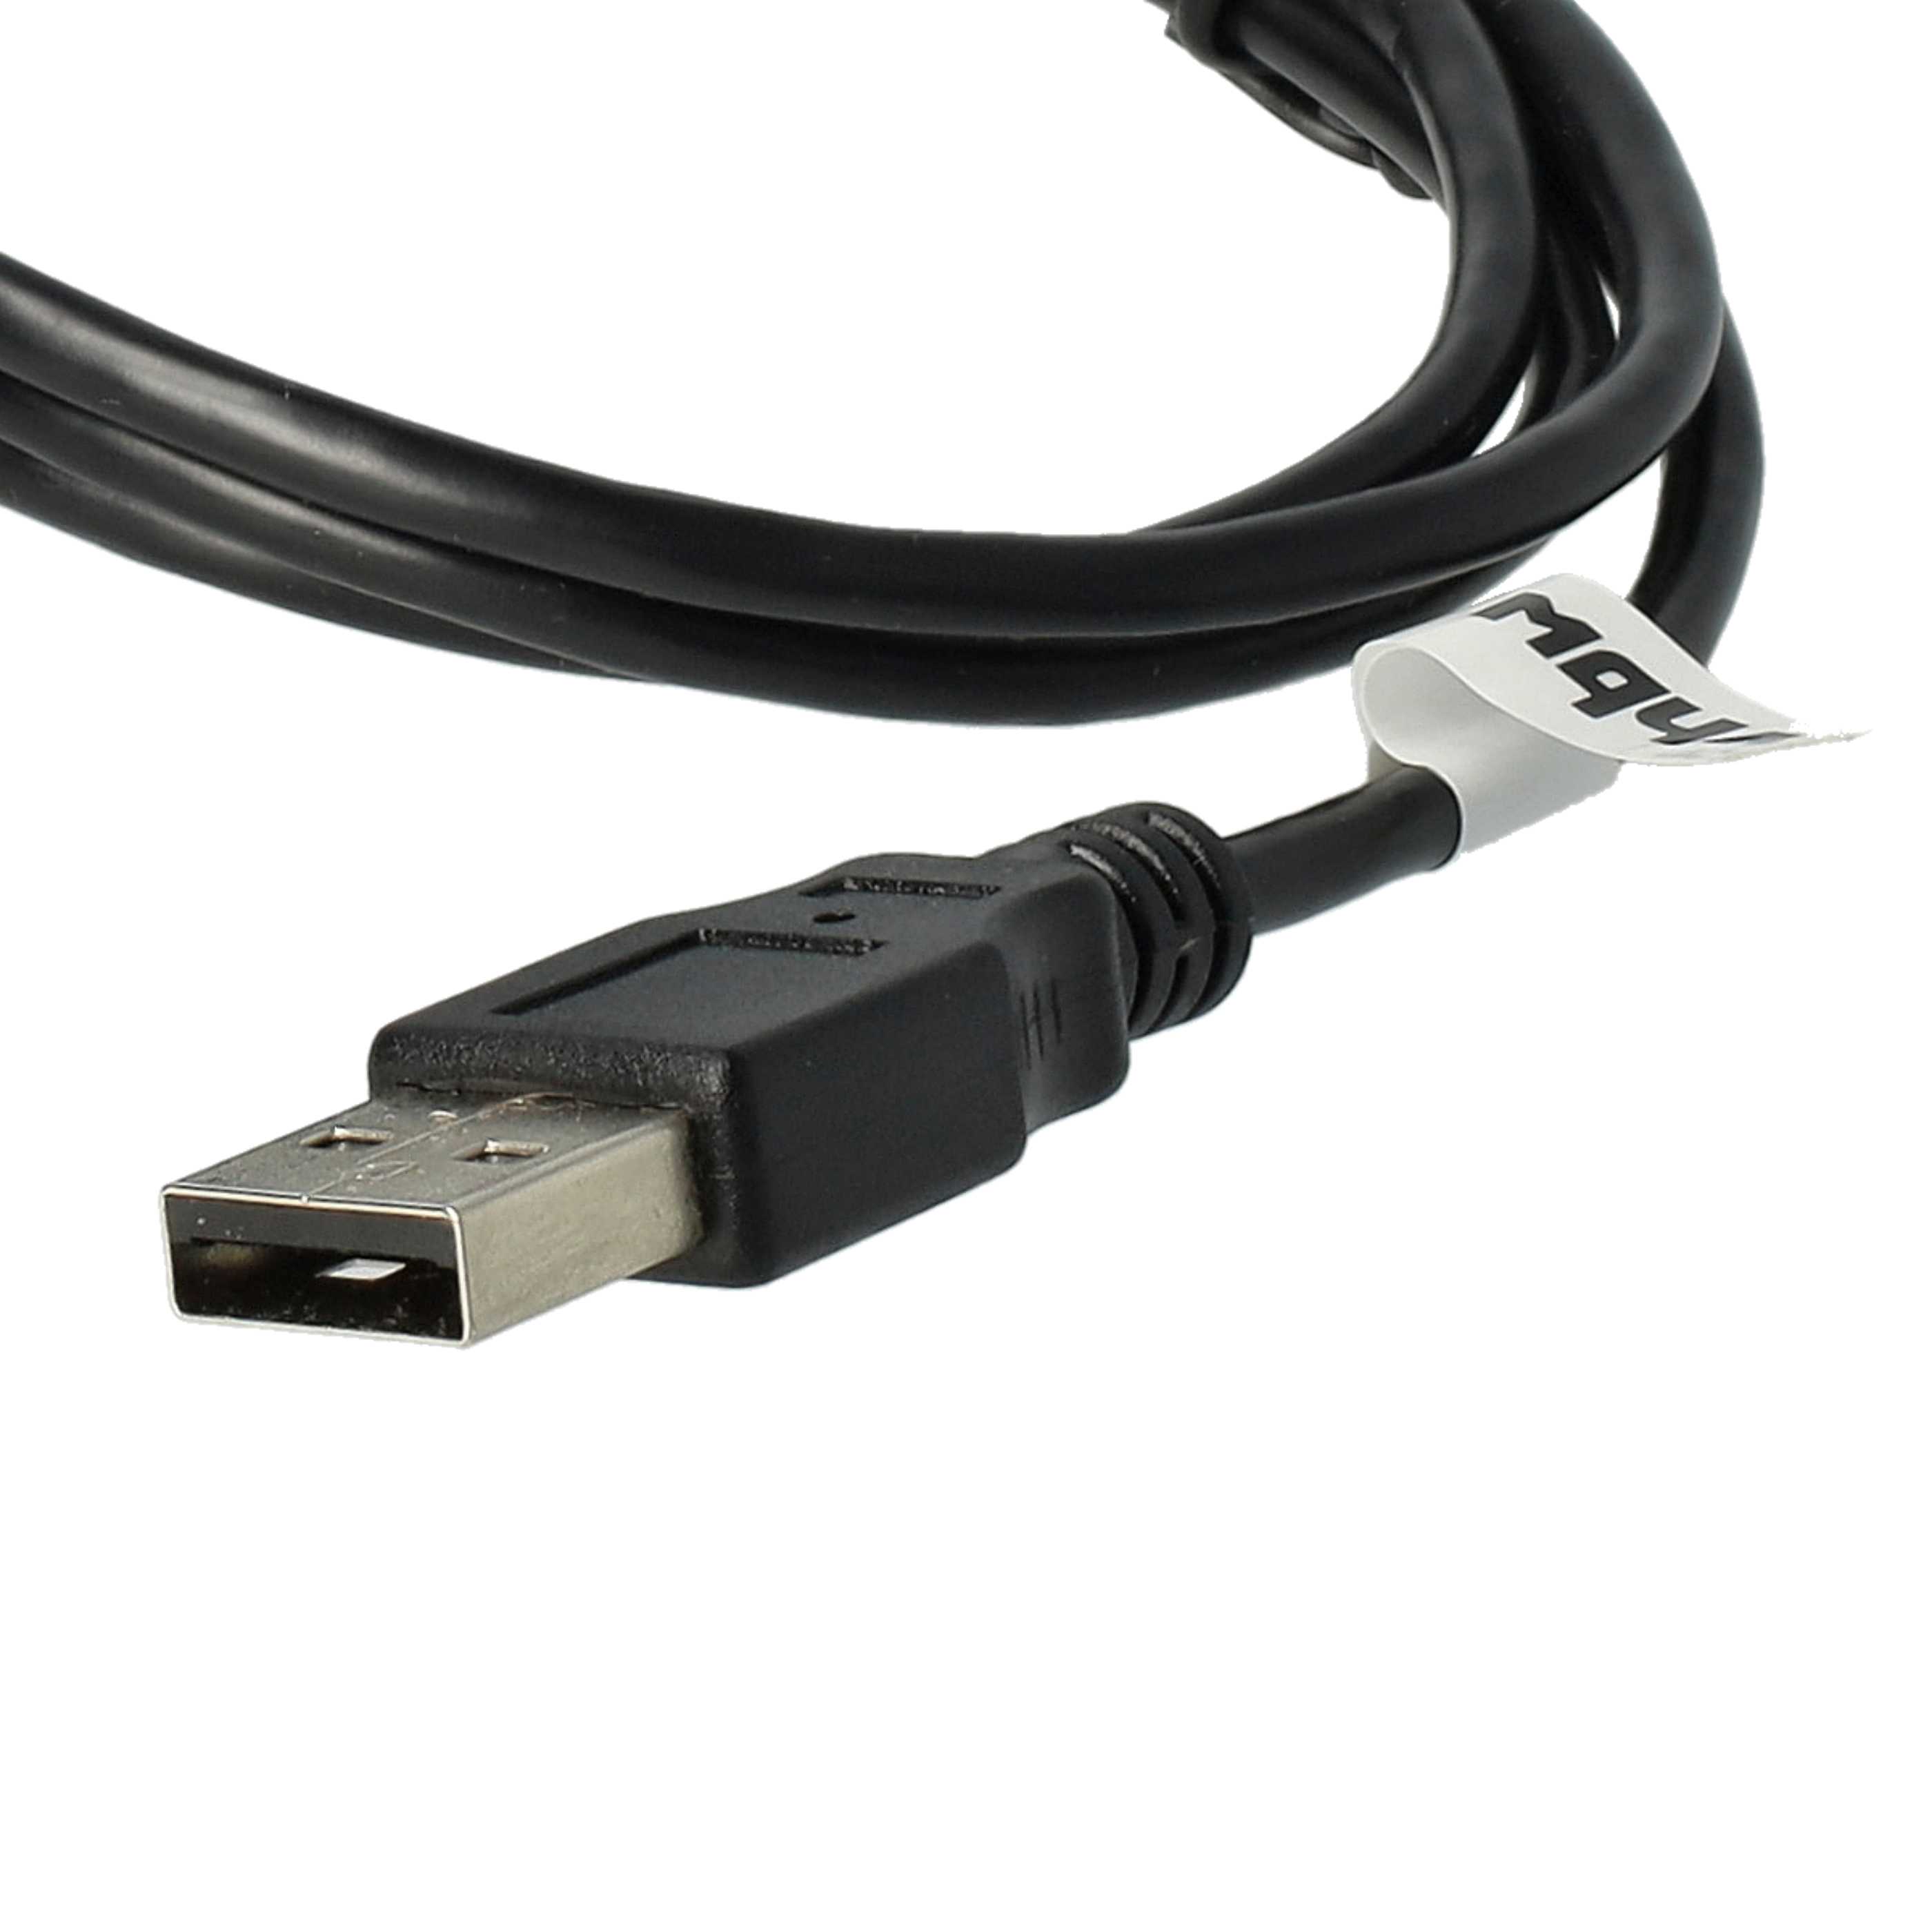 USB Datenkabel passend für Iriver H10 1GB u.a., 100 cm